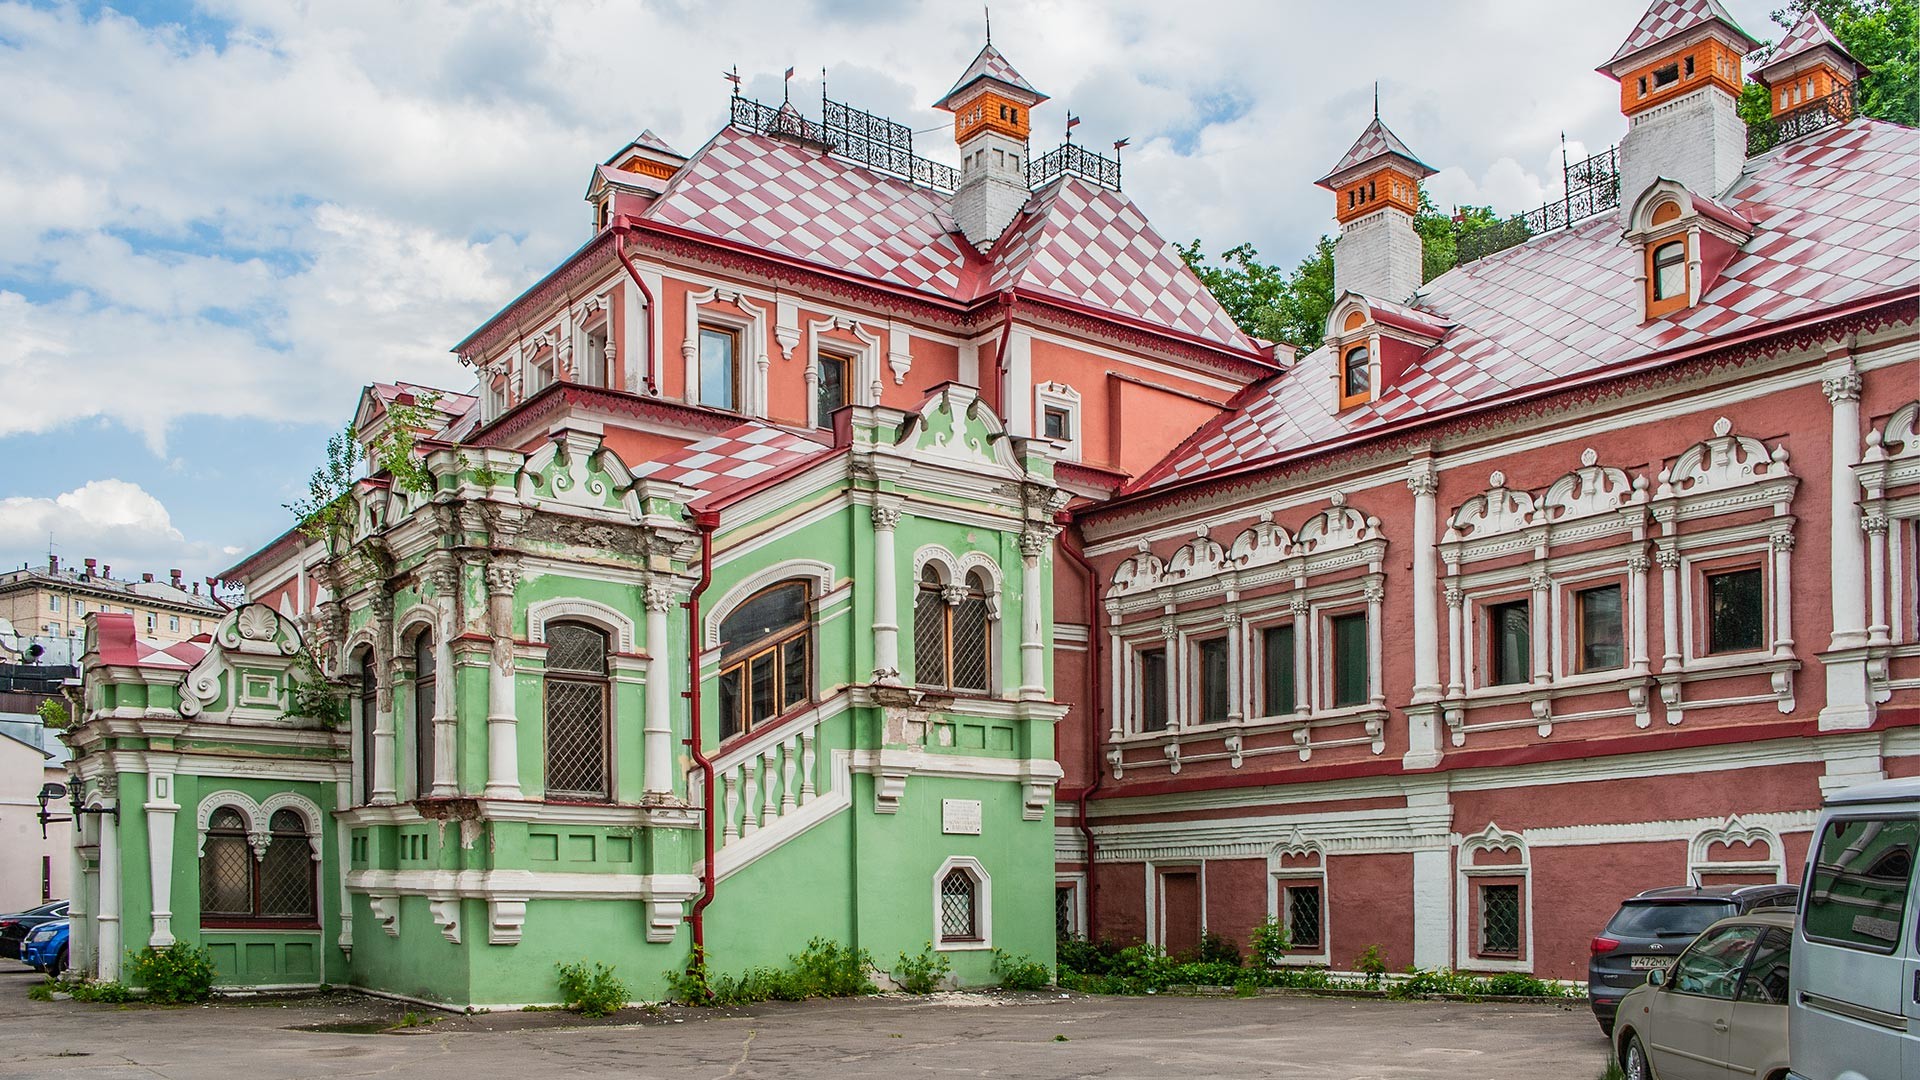 The Volkov-Yusupov palace